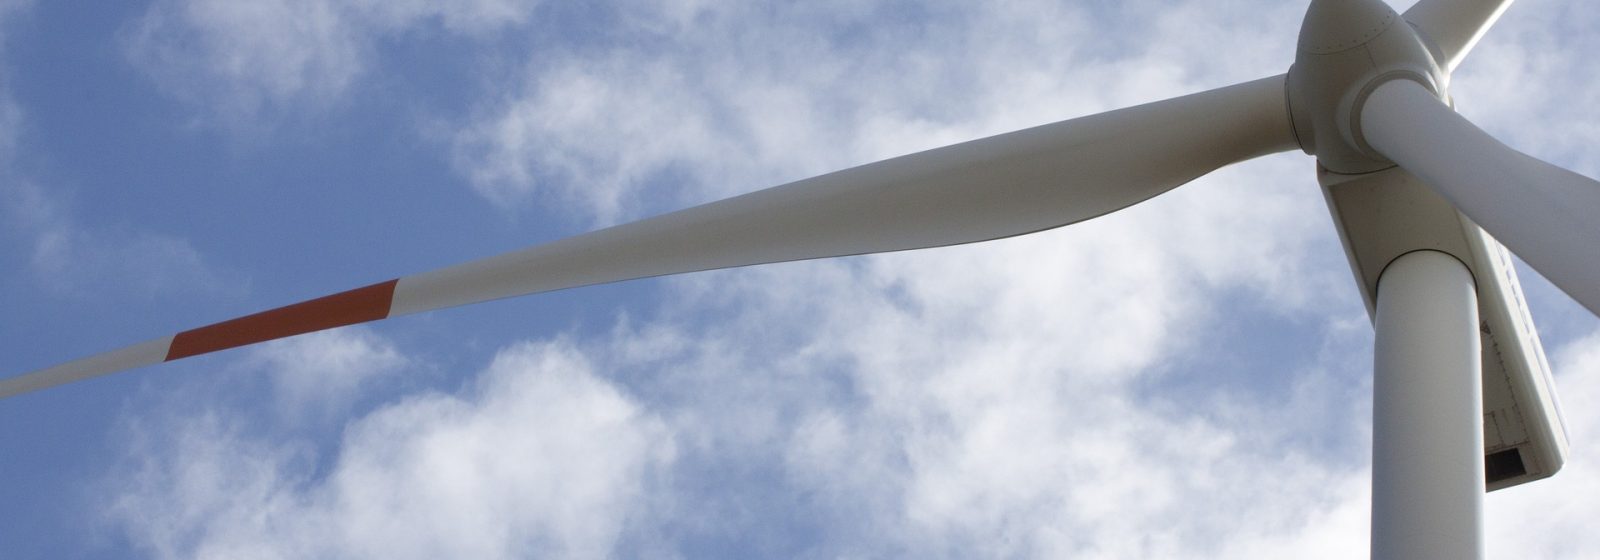 20221011 - Windturbine